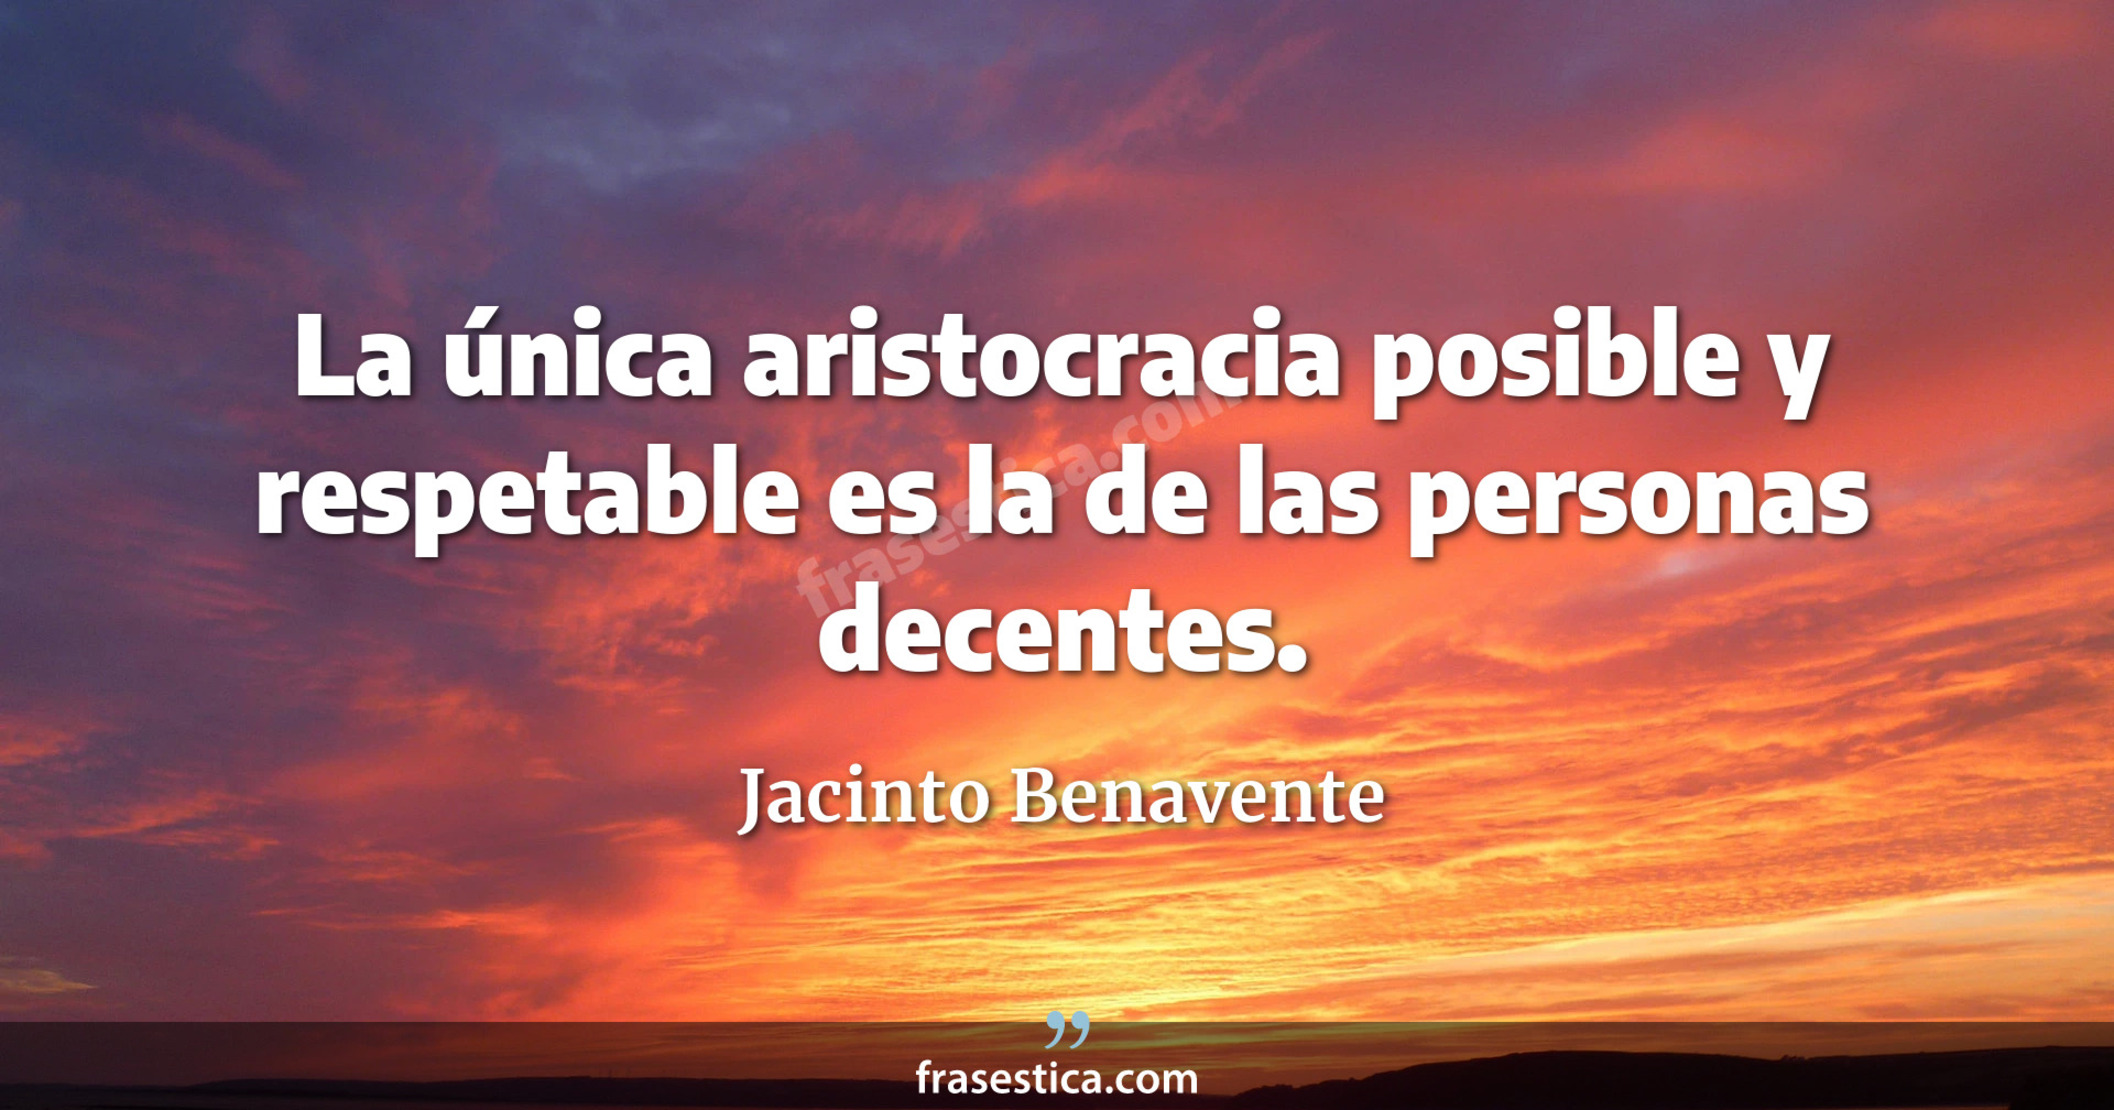 La única aristocracia posible y respetable es la de las personas decentes. - Jacinto Benavente